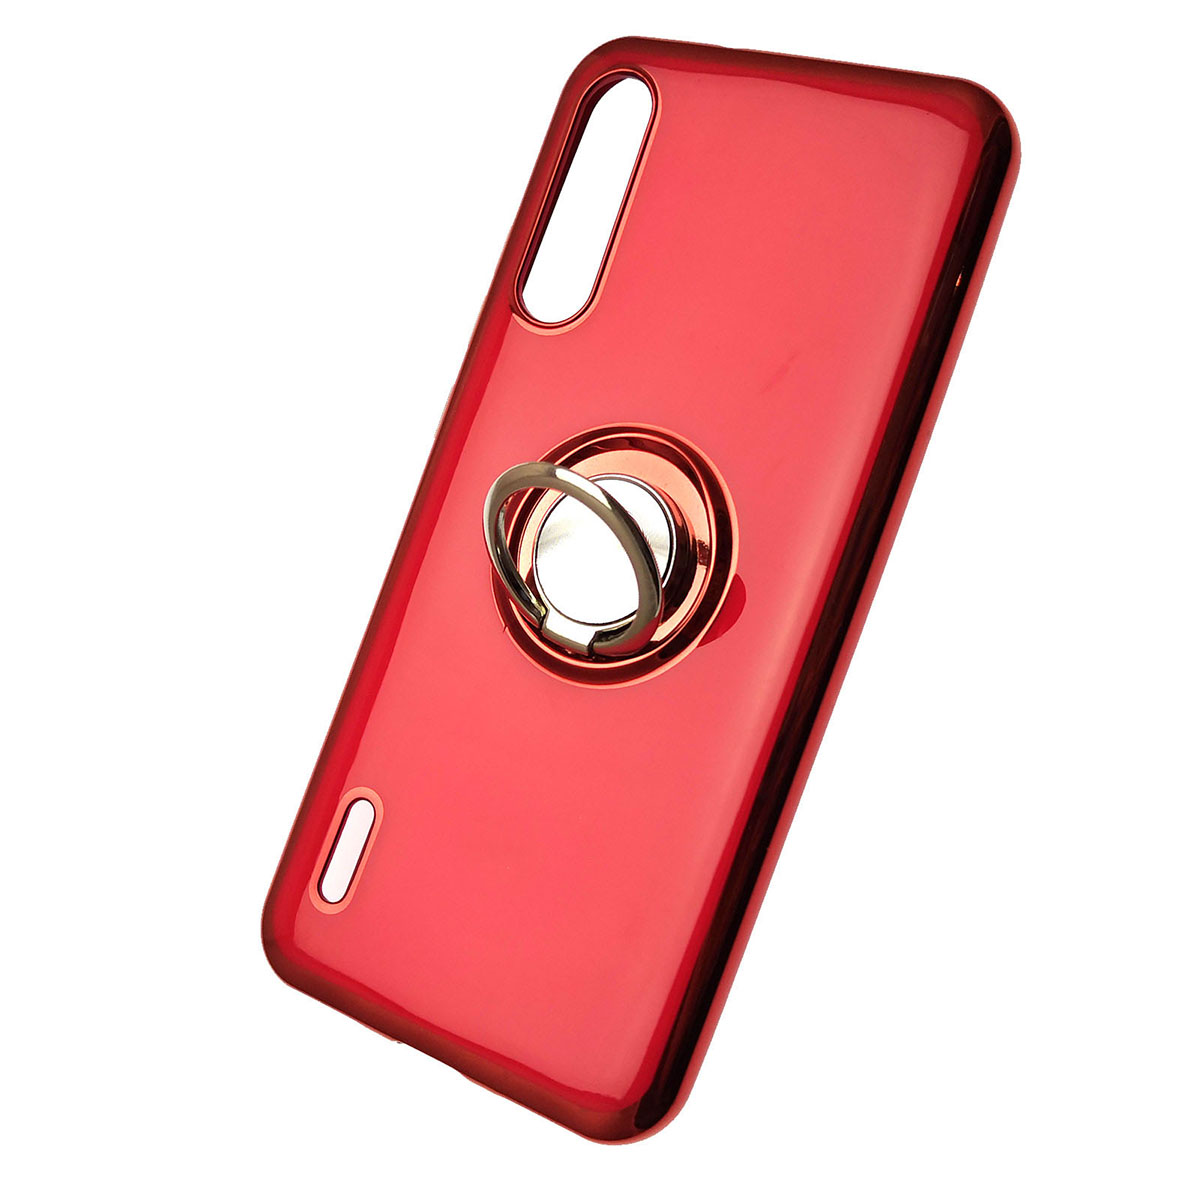 Чехол накладка для XIAOMI Mi A3, Mi CC9E, силикон, кольцо держатель, цвет красный.